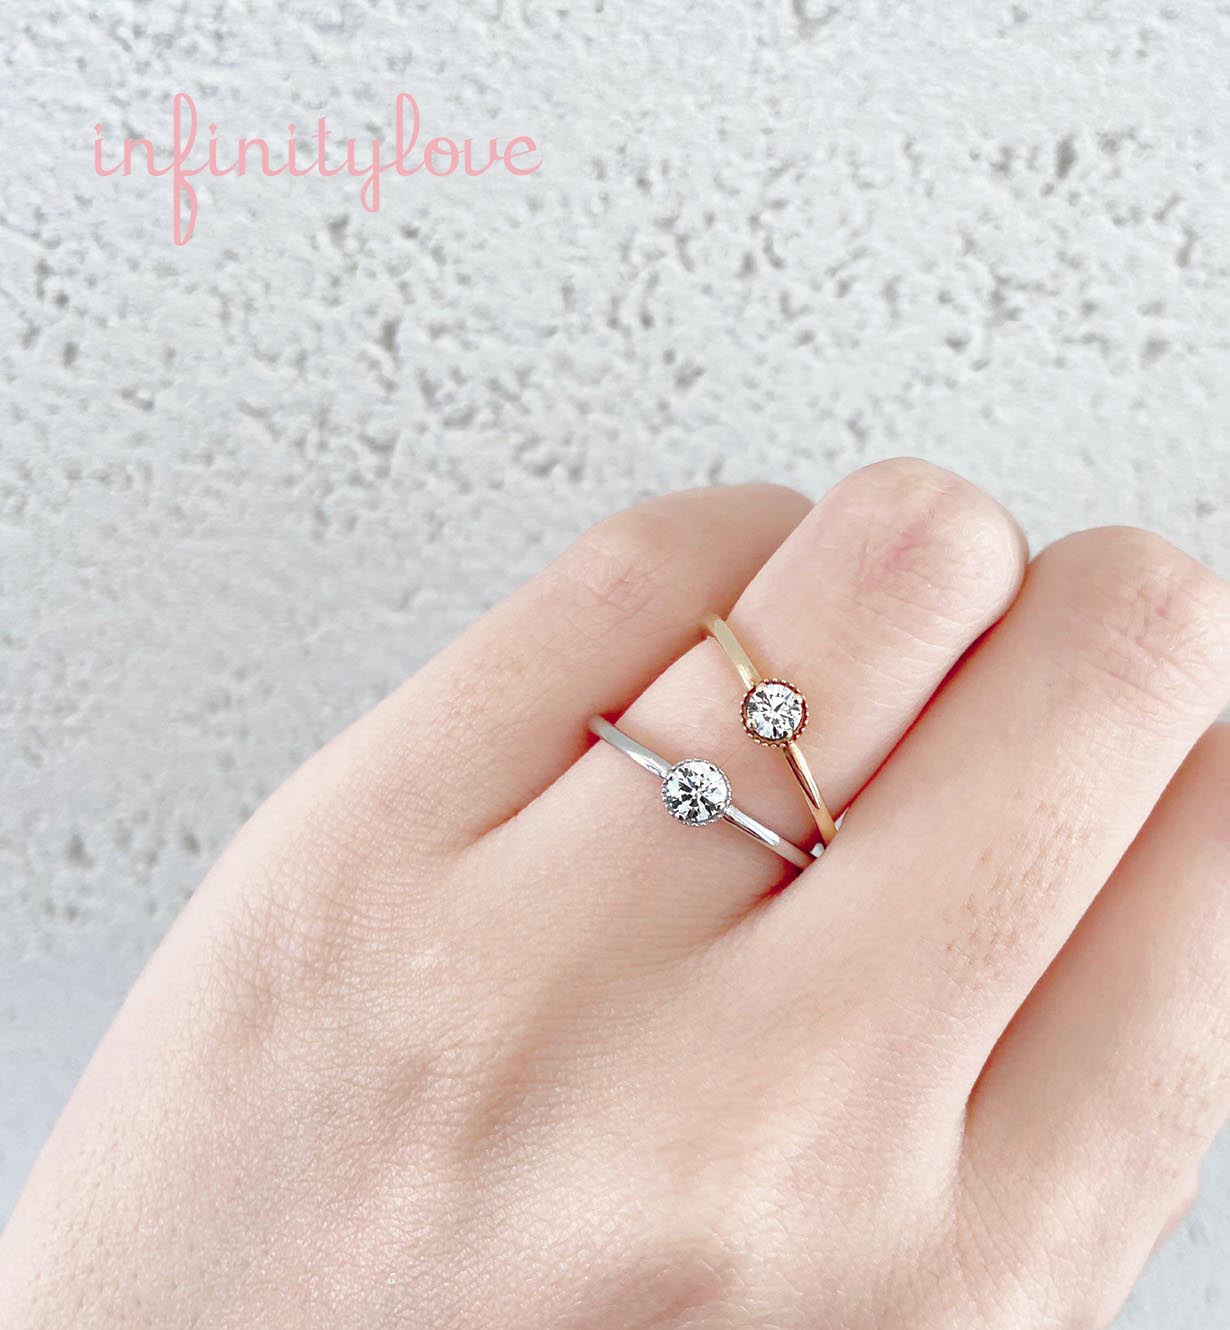 美しいダイヤモンドの周りにミルグレインが可愛いシンプルな婚約指輪。